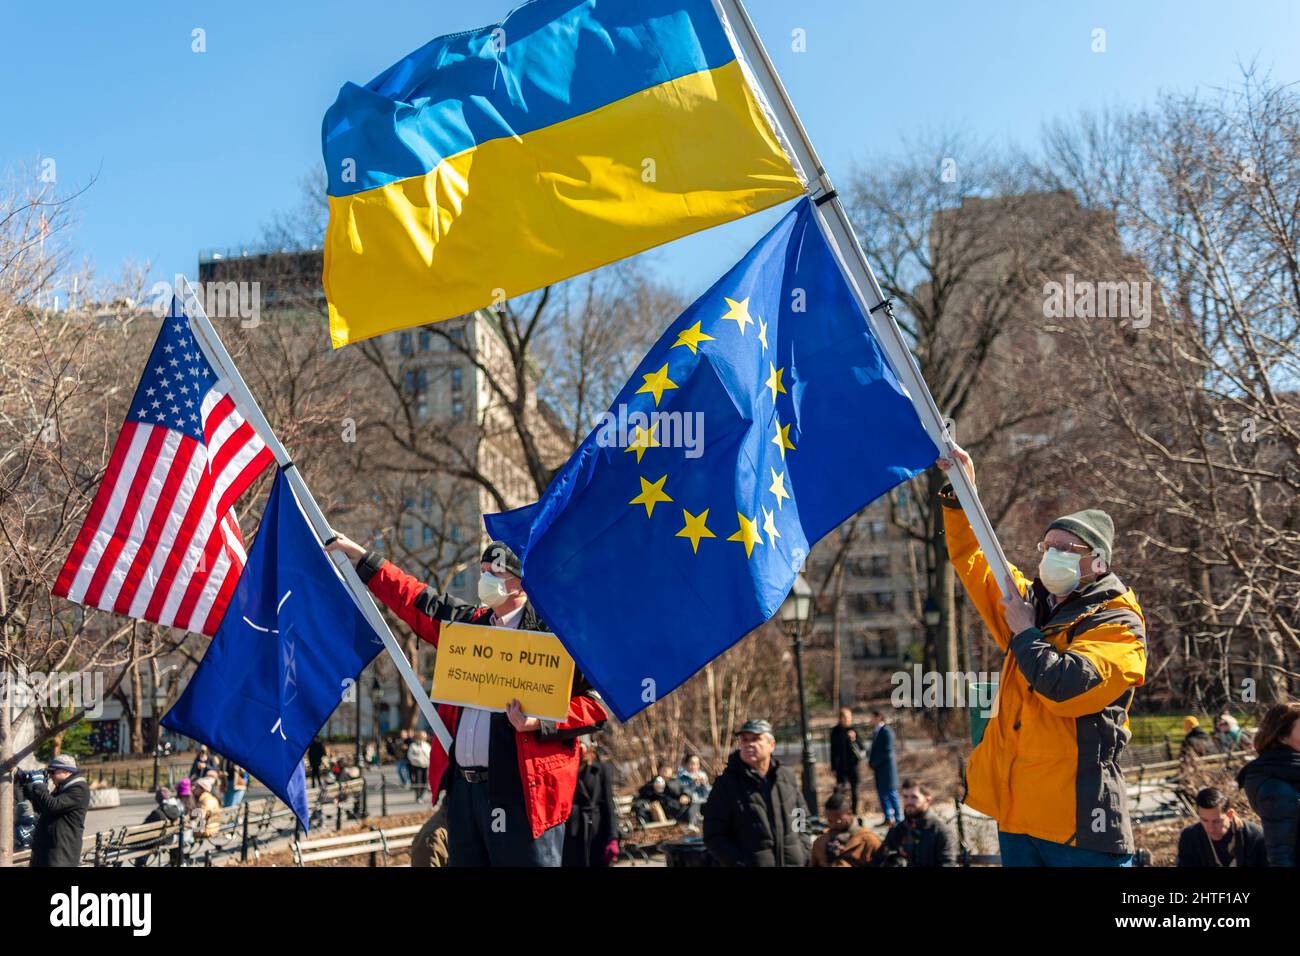 Ukrainisch-Amerikaner und ihre Anhänger protestieren am Sonntag, den 27. Februar 2022, im Washington Square Park in New York gegen die russische Invasion und zeigen Unterstützung für die Bürger der Ukraine. (© Richard B. Levine) Stockfoto